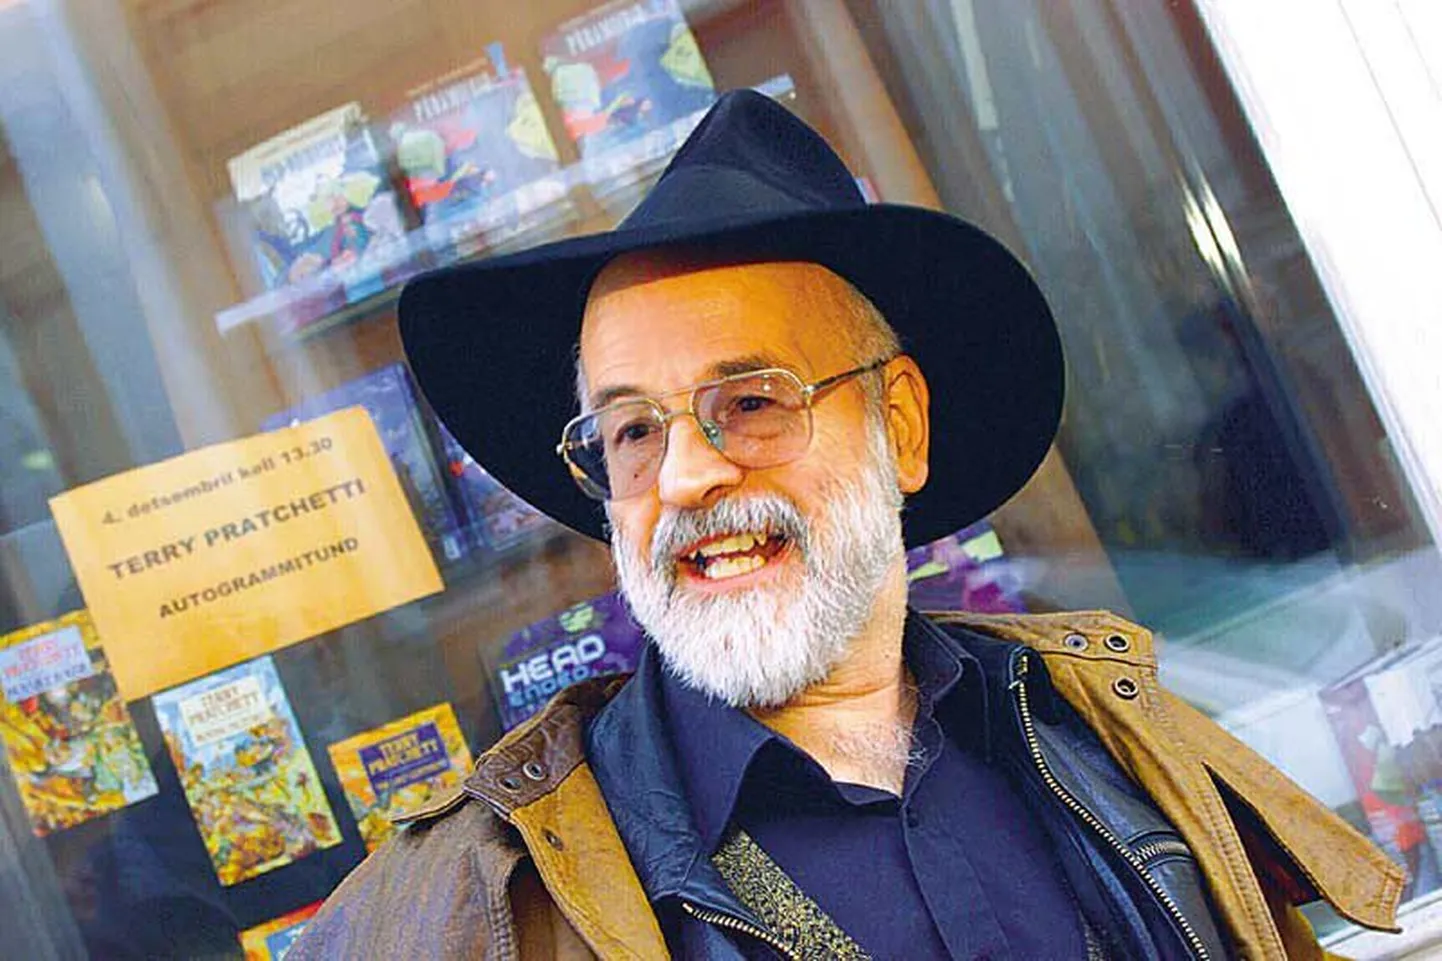 Briti fantaasiakirjanik Terry Pratchett ei piirdu ainult Kettamaailma lugude kirjutamisega. Aprillis on oodata raamatu «Tillud vabamehed» järje «Kübar täis taevast» ilmumist.